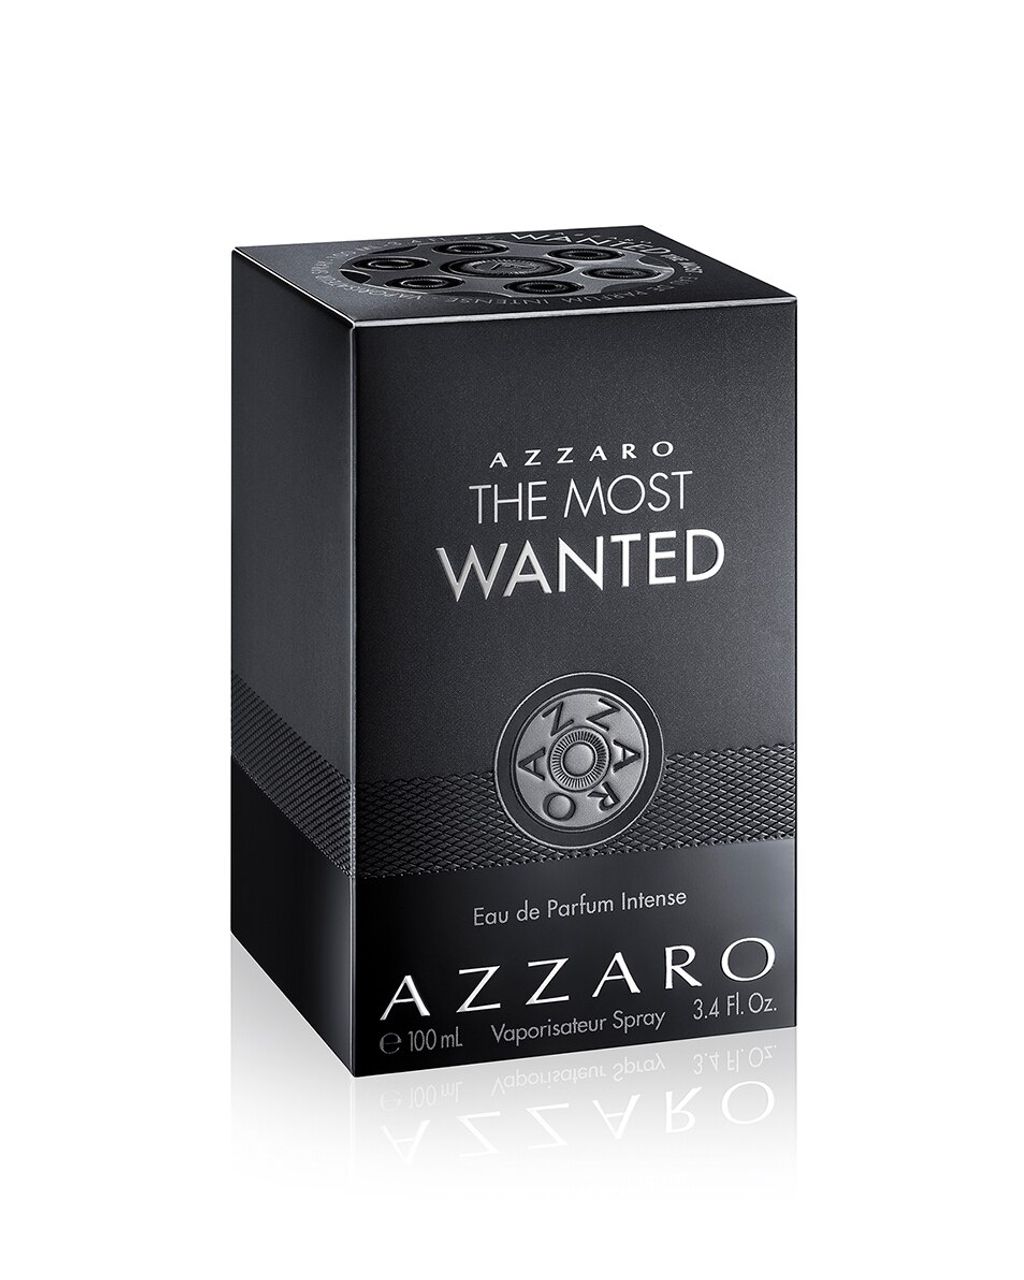 Azzaro The Most Wanted EAU DE PARFUM INTENSE MANNEN 100 ML